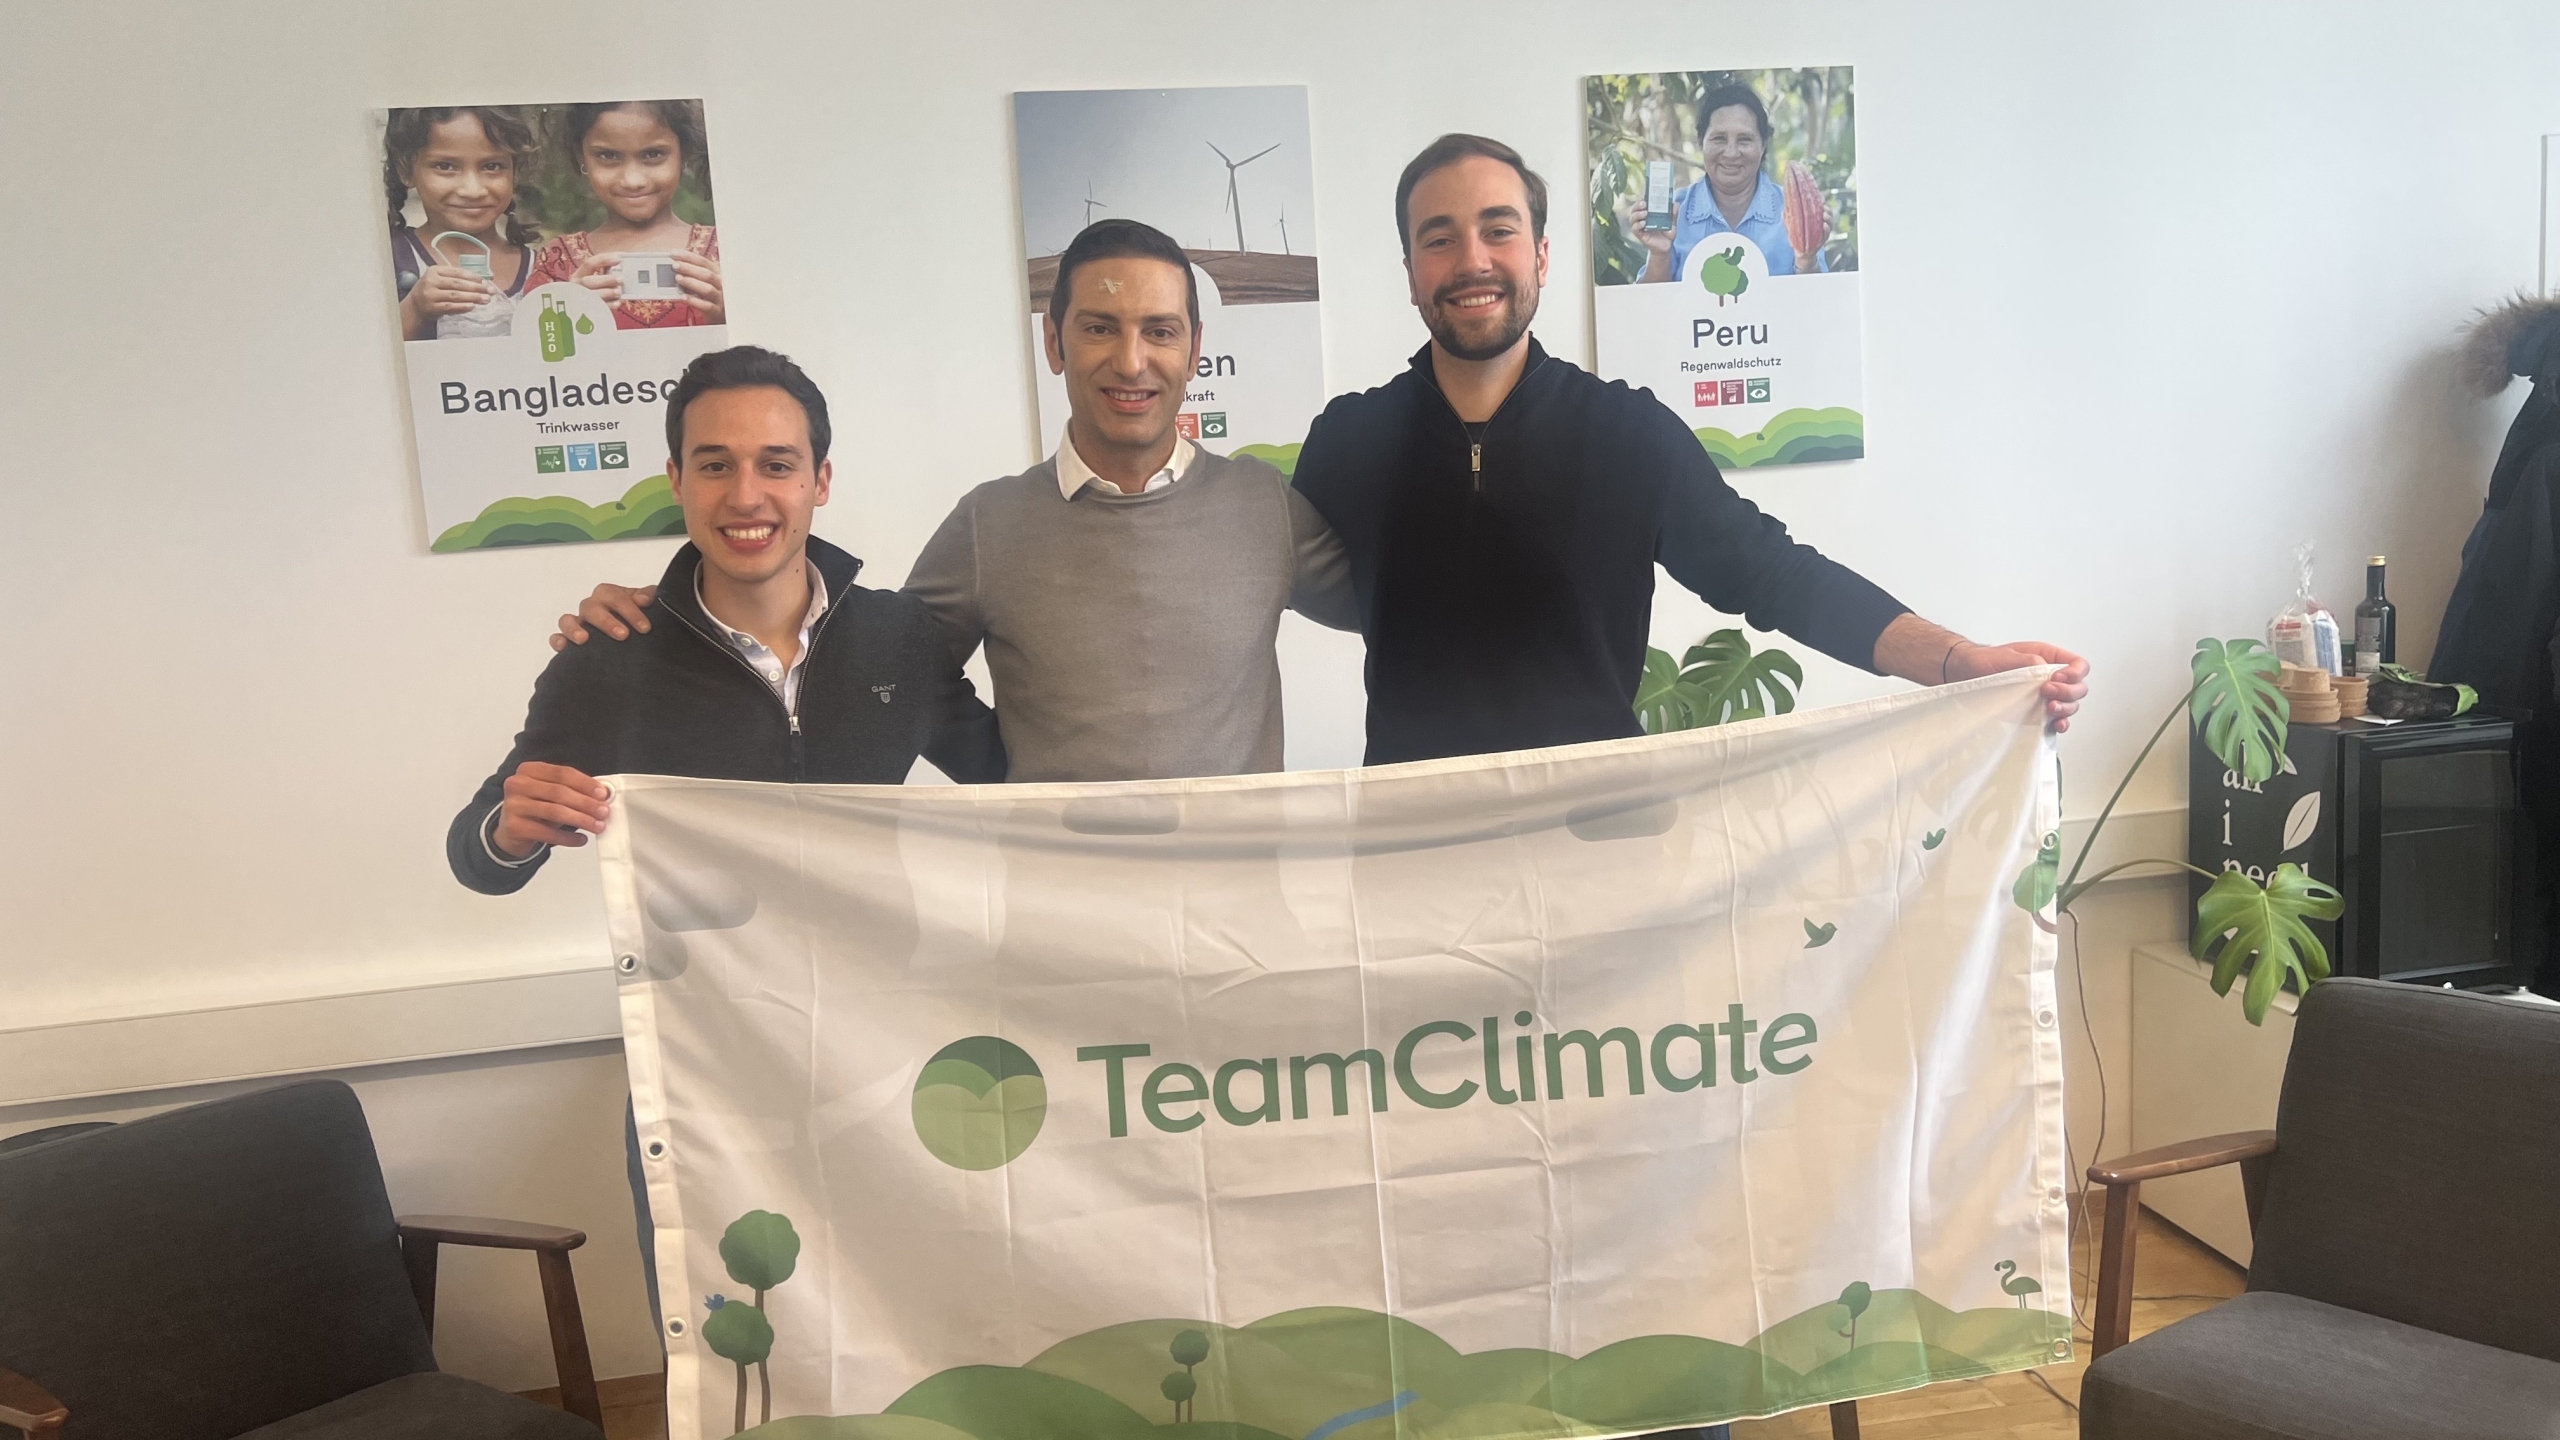 ClimateTrade erwirbt TeamClimate, um abonnementbasierten COXNUMX-Ausgleich anzubieten